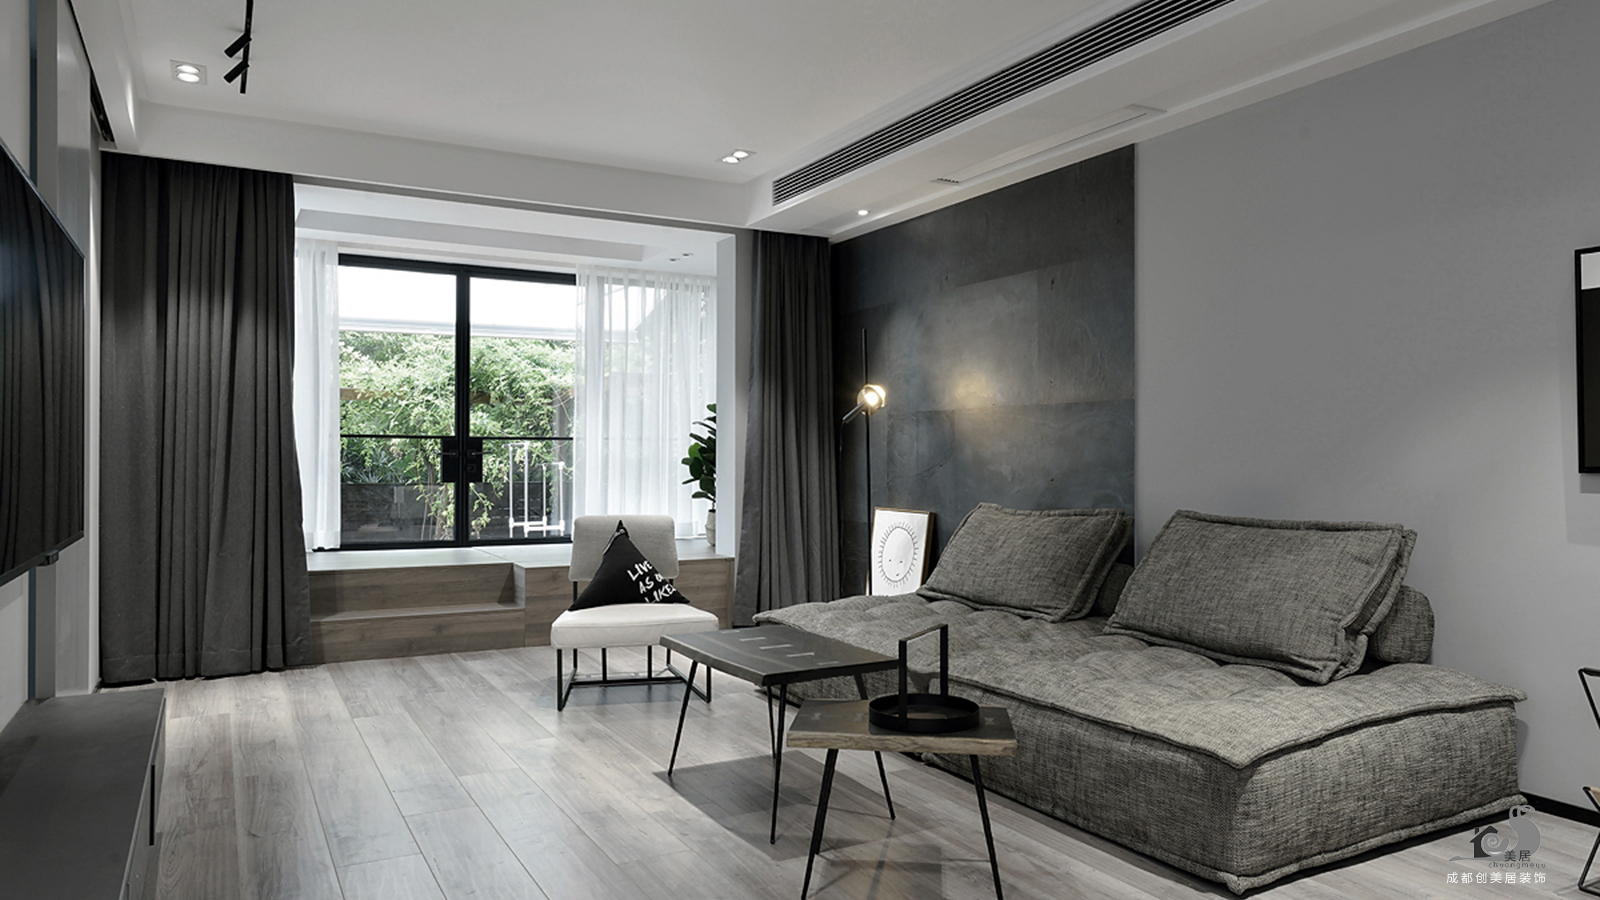 100平米装修,二居室装修,10-15万装修,现代简约风格,沙发,沙发背景墙,窗帘,黑白,灰色